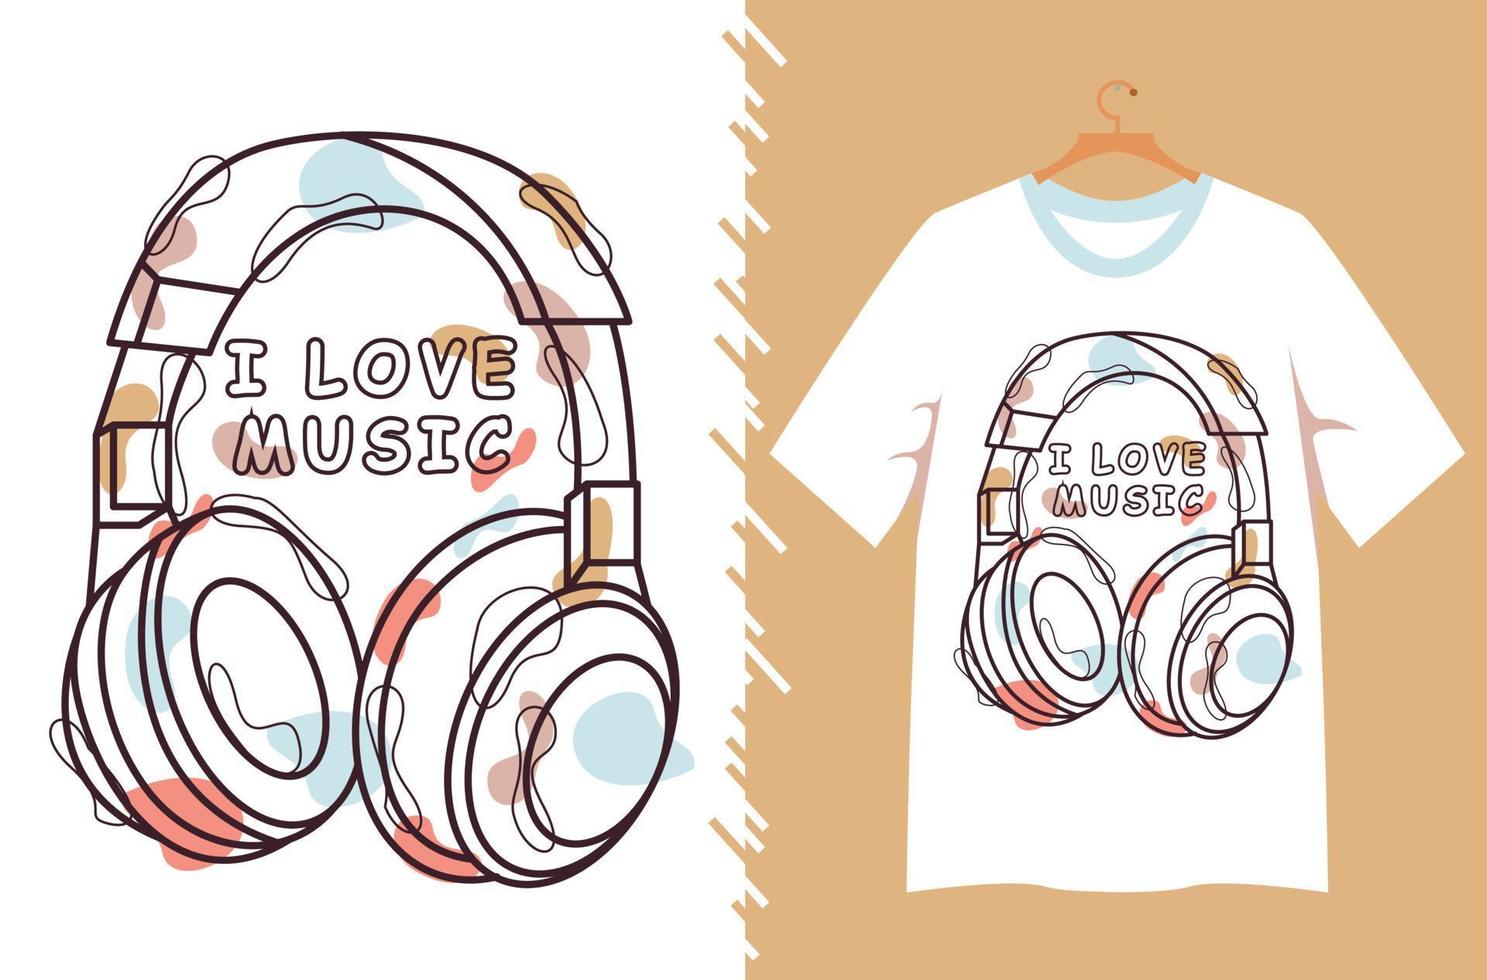 illustration musicale pour la conception de t-shirt vecteur